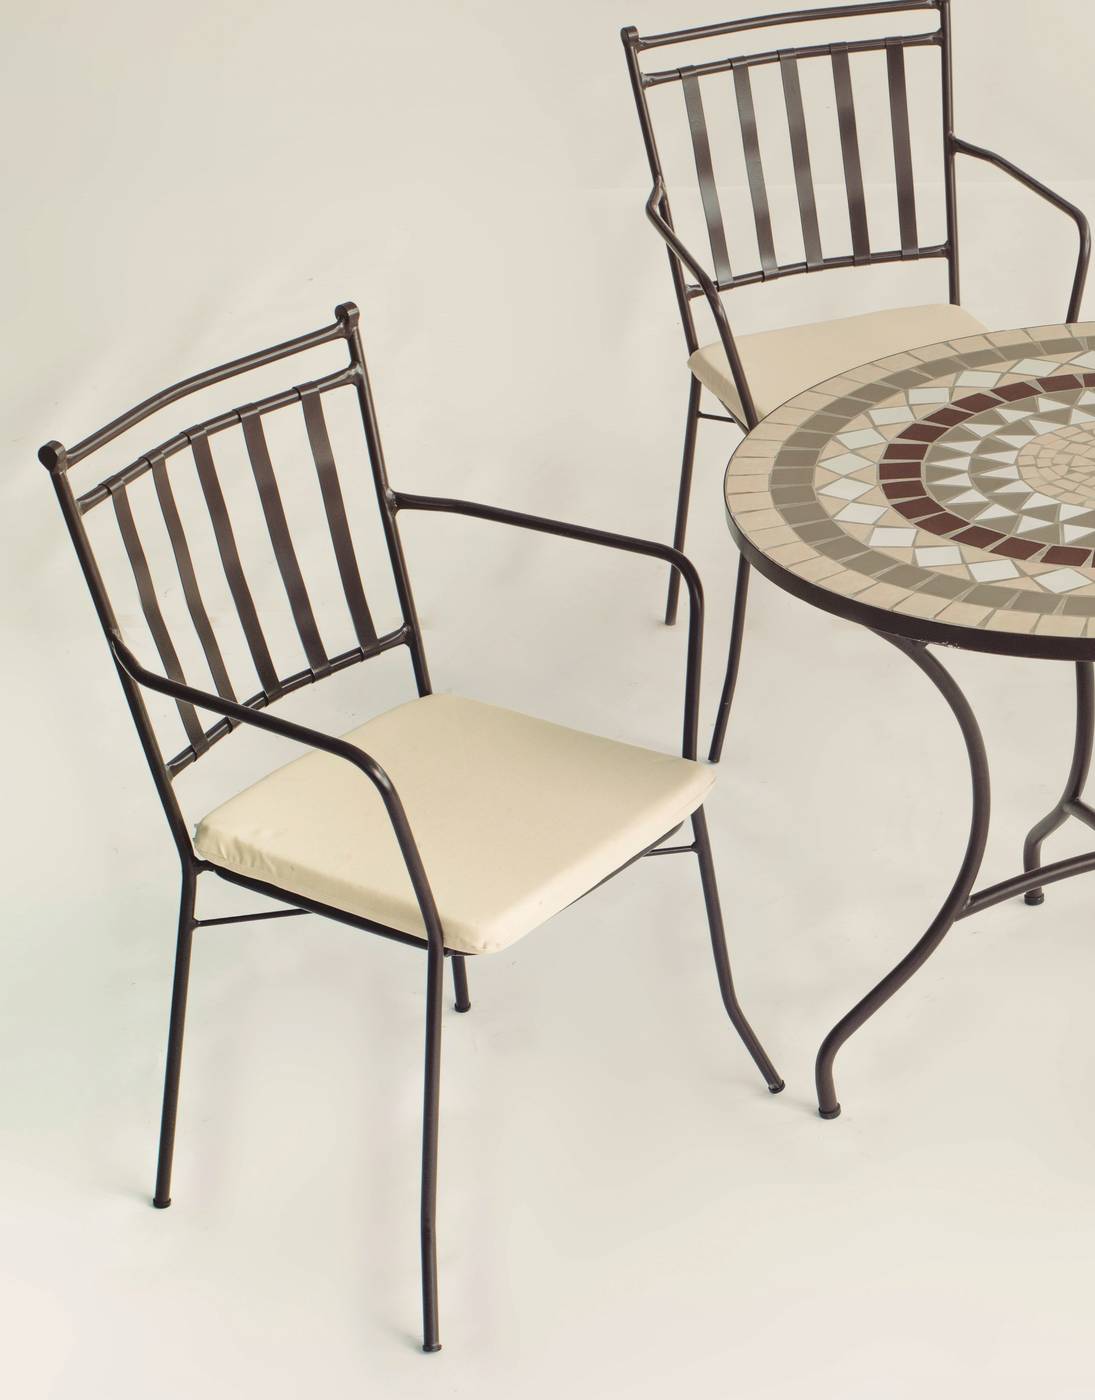 Conjunto Mosaico Neypal-Shifa - Conjunto de forja color bronce: mesa con tablero mosaico de 90 cm + 4 sillones con cojines asiento.